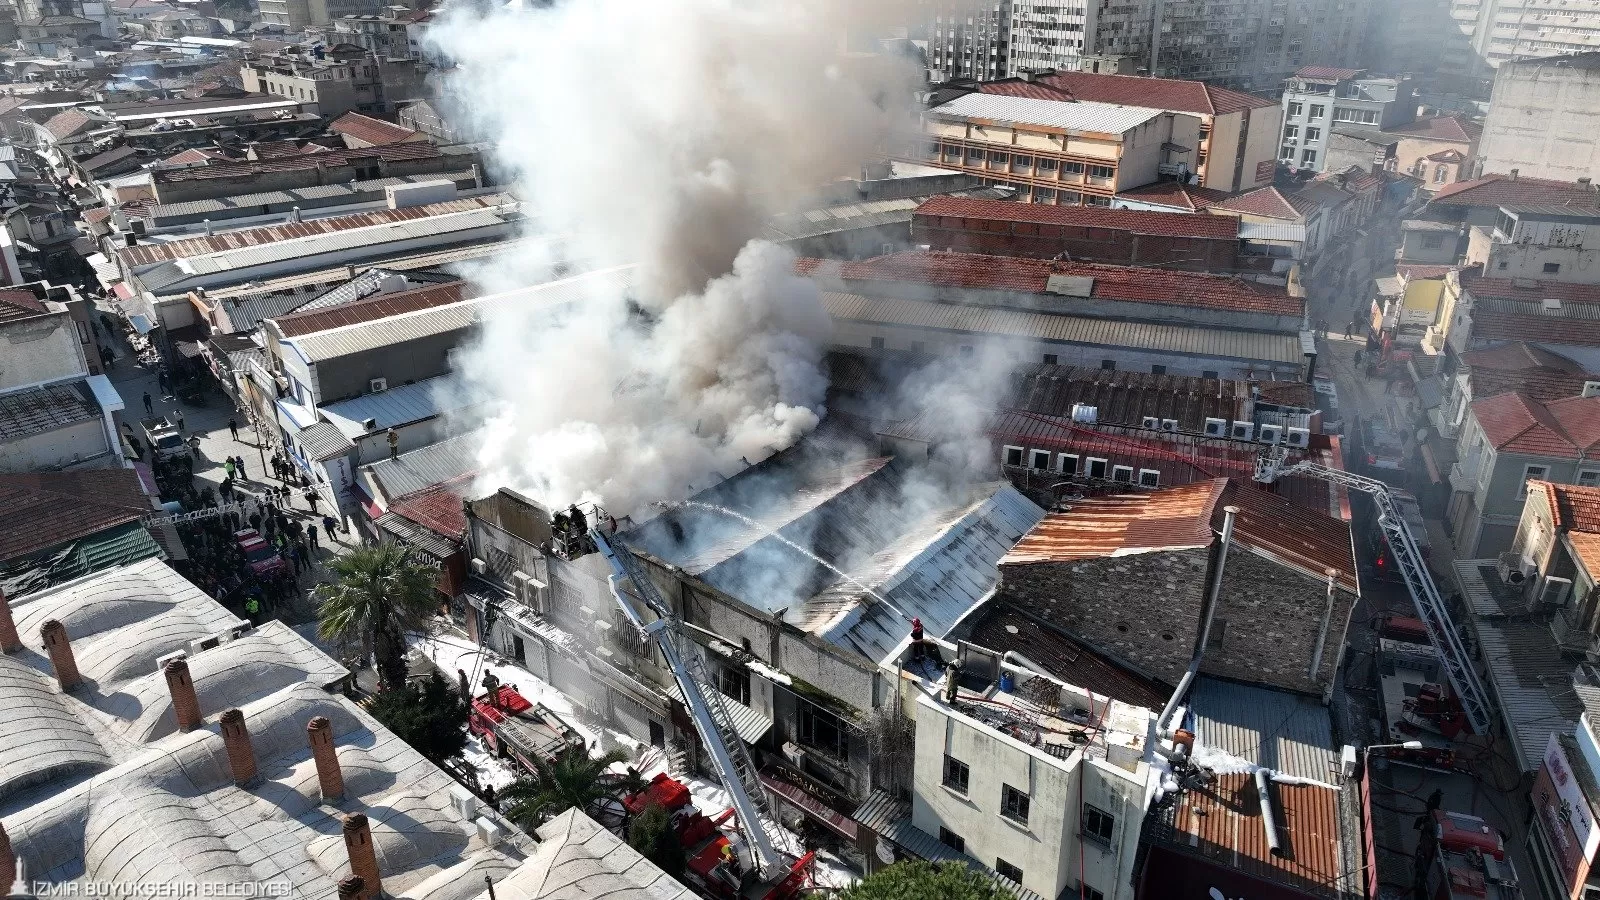 İzmir'in tarihi çarşısı Kemeraltı'nda dün sabah saatlerinde çıkan yangın, büyük panik yarattı.